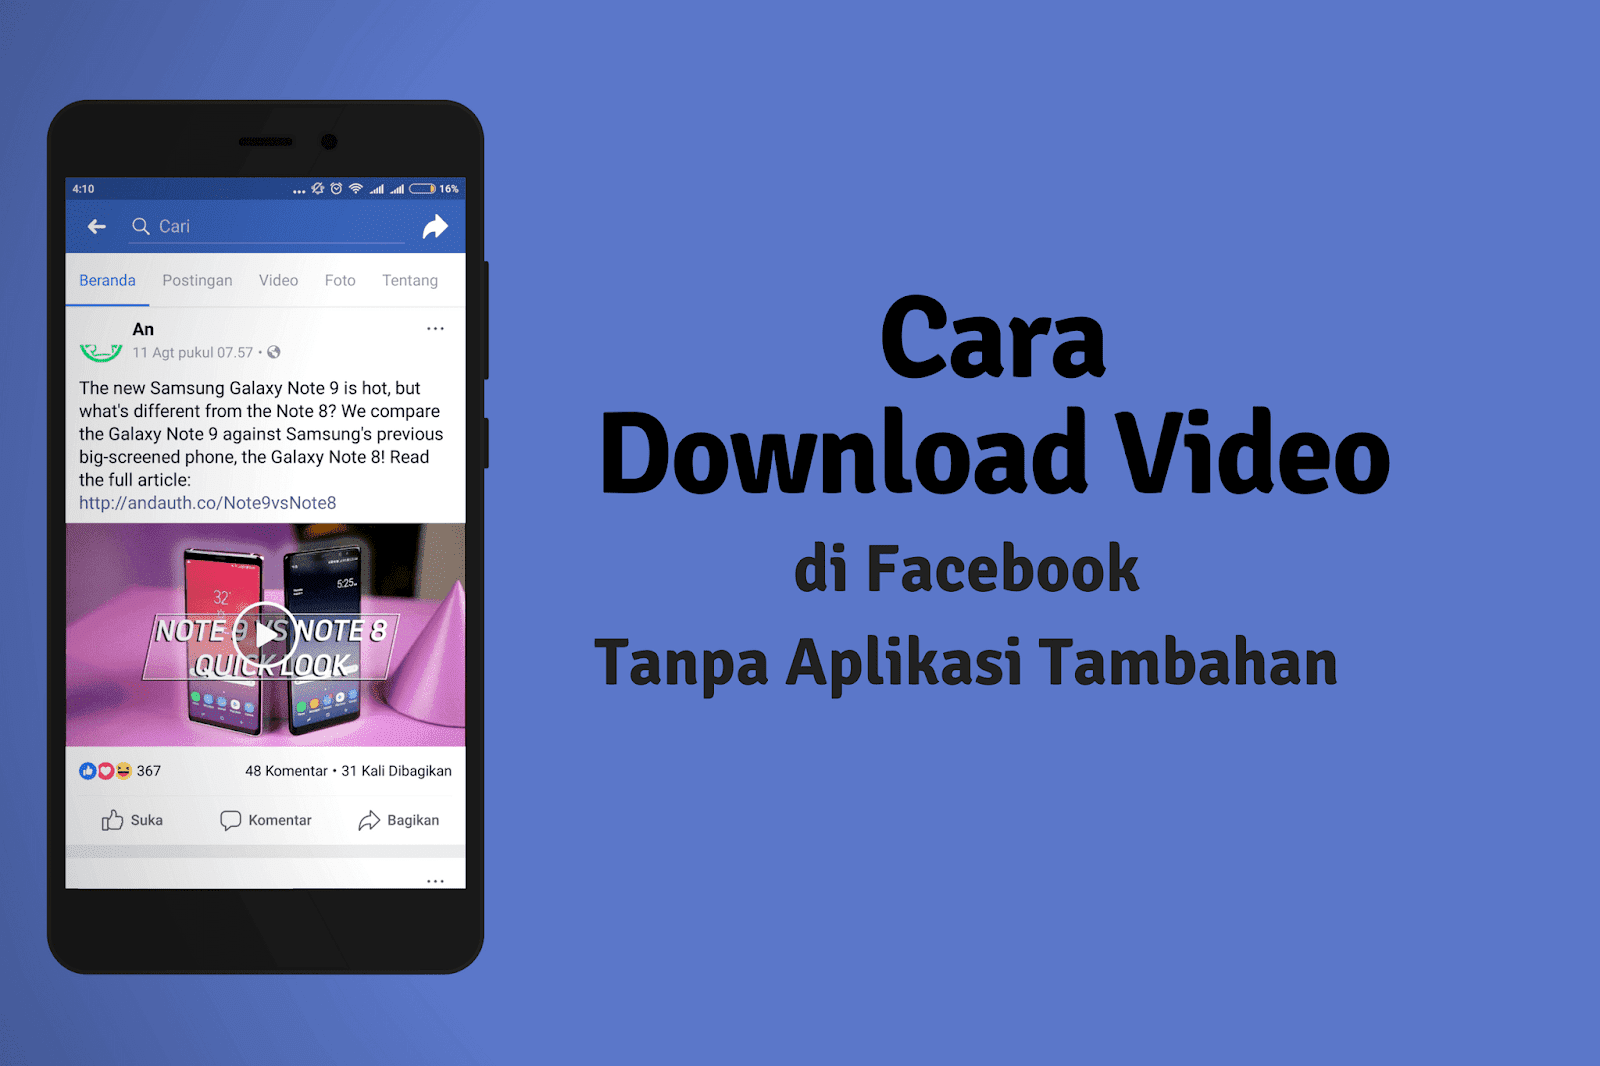 Cara Download Video di Facebook Tanpa Aplikasi di HP & Komputer